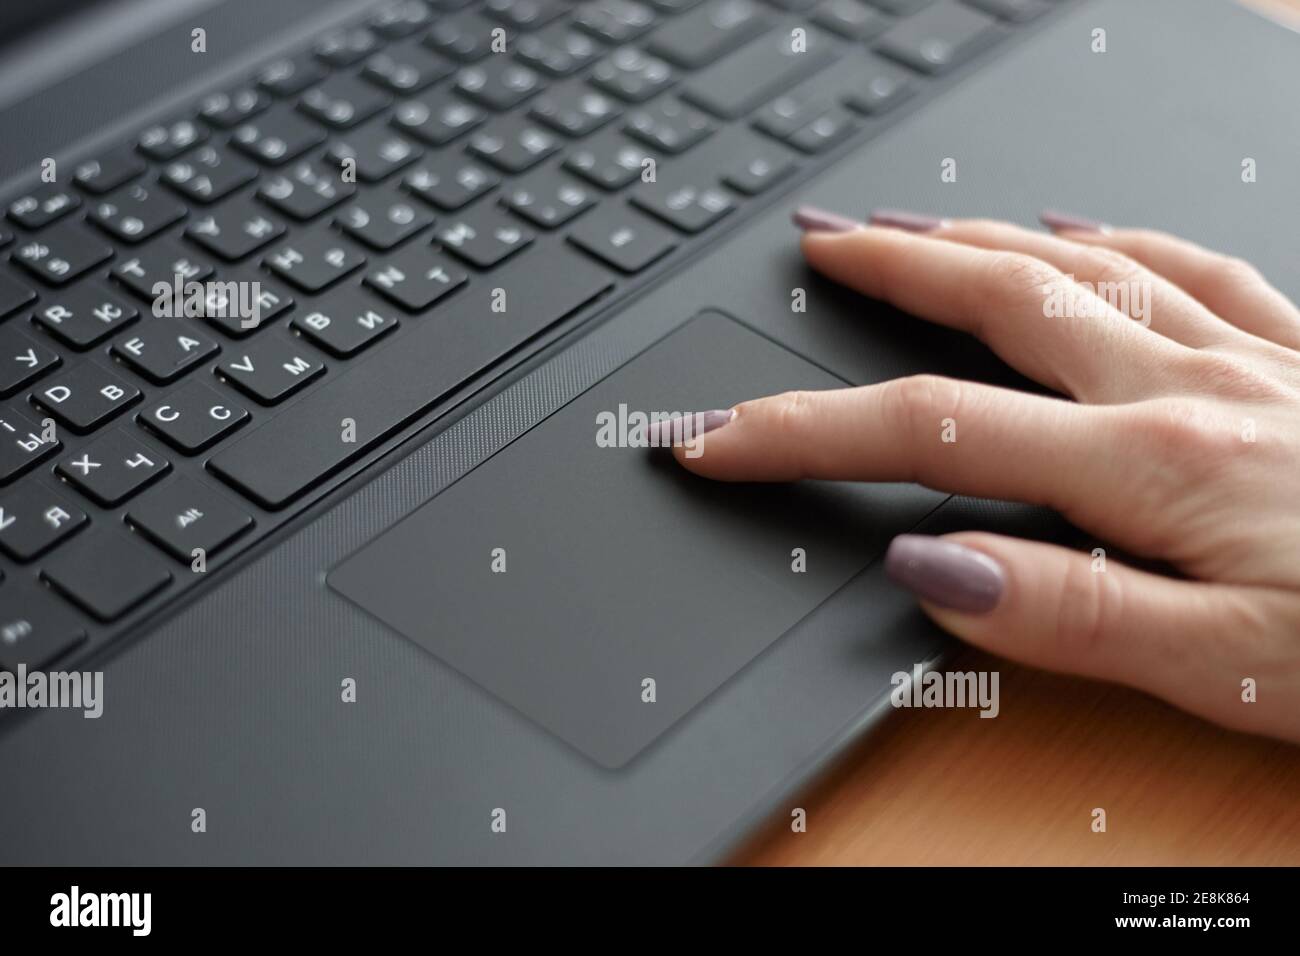 Femme utilisant un ordinateur portable noir pour travailler. Surfer sur Internet à l'aide du pavé tactile. Concept d'entreprise Banque D'Images